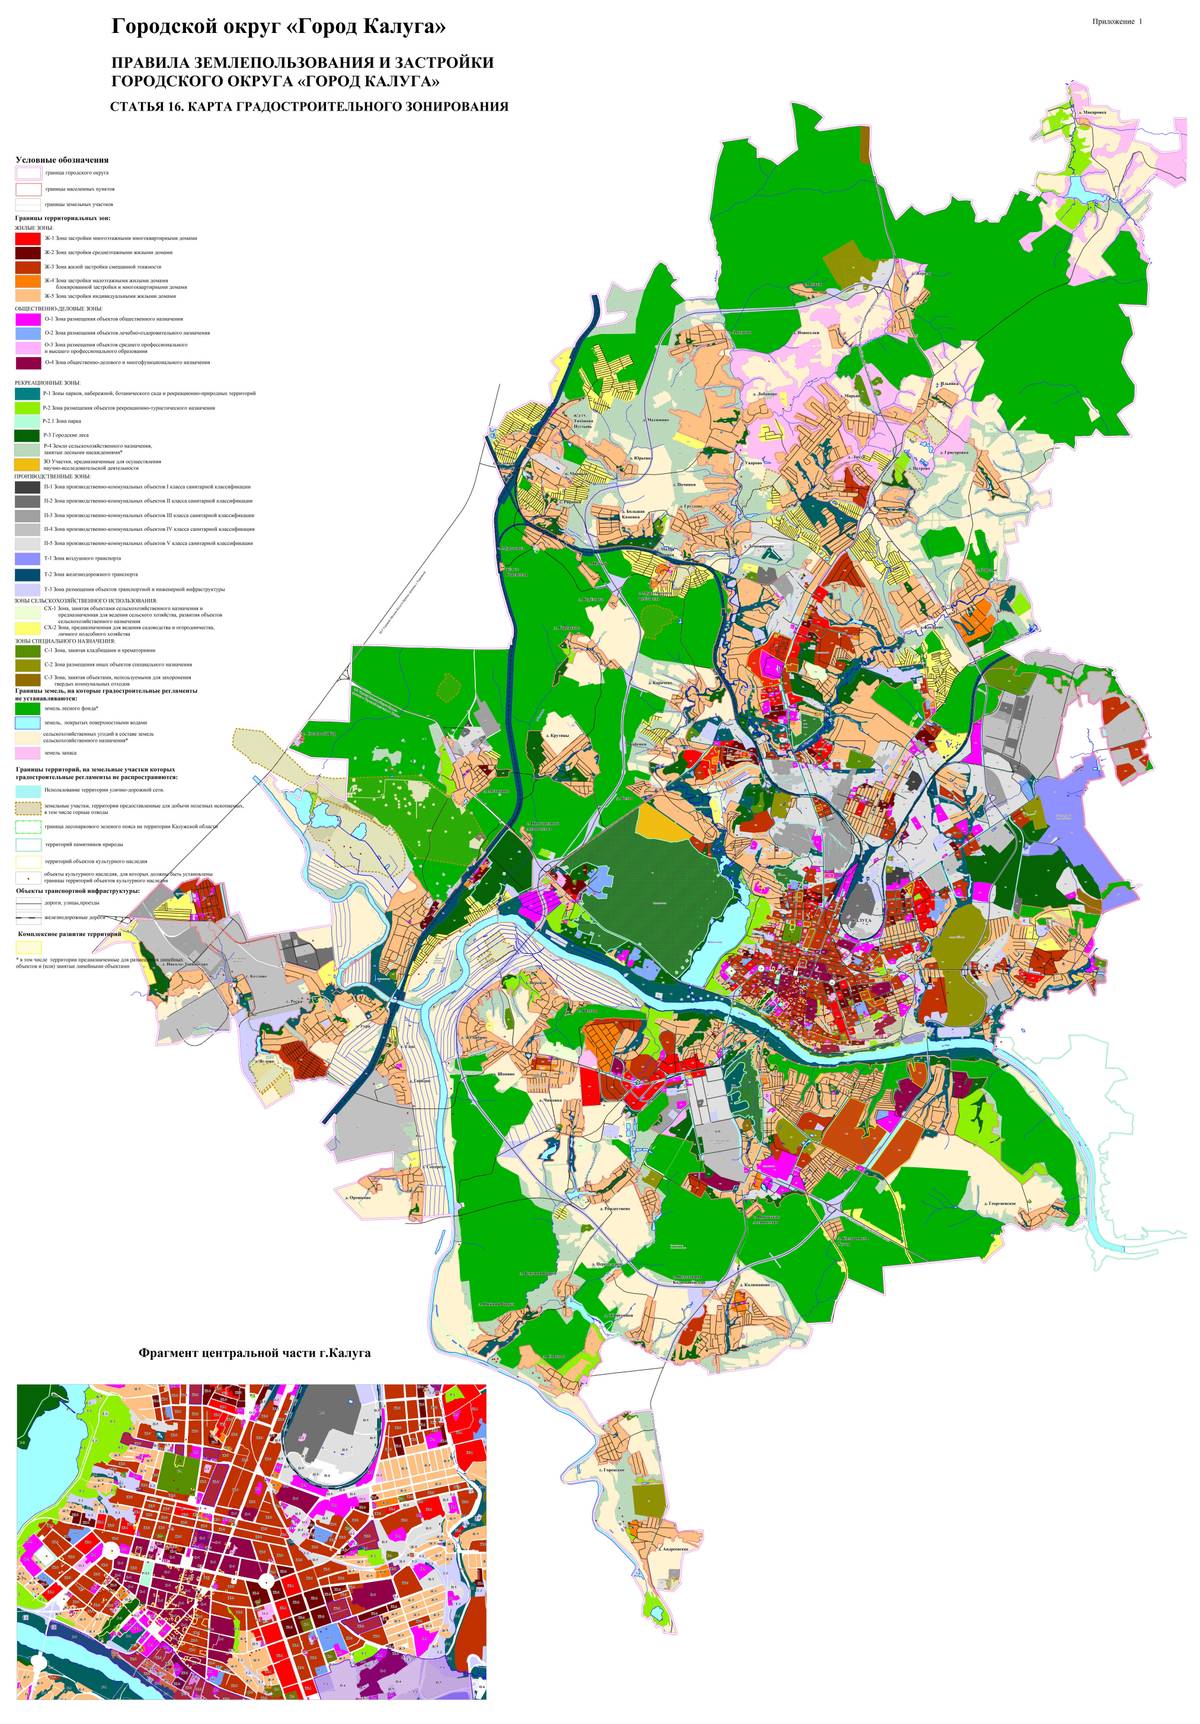 Территориальные зоны обозначены на карте градостроительного зонирования — это часть правил землепользования и застройки. Например, это карта зонирования Калуги: красным обозначена многоэтажная жилая застройка, желтоватым — ИЖС, различные оттенки серого — это производственно-коммунальные зоны. Источник: kaluga-gov.ru